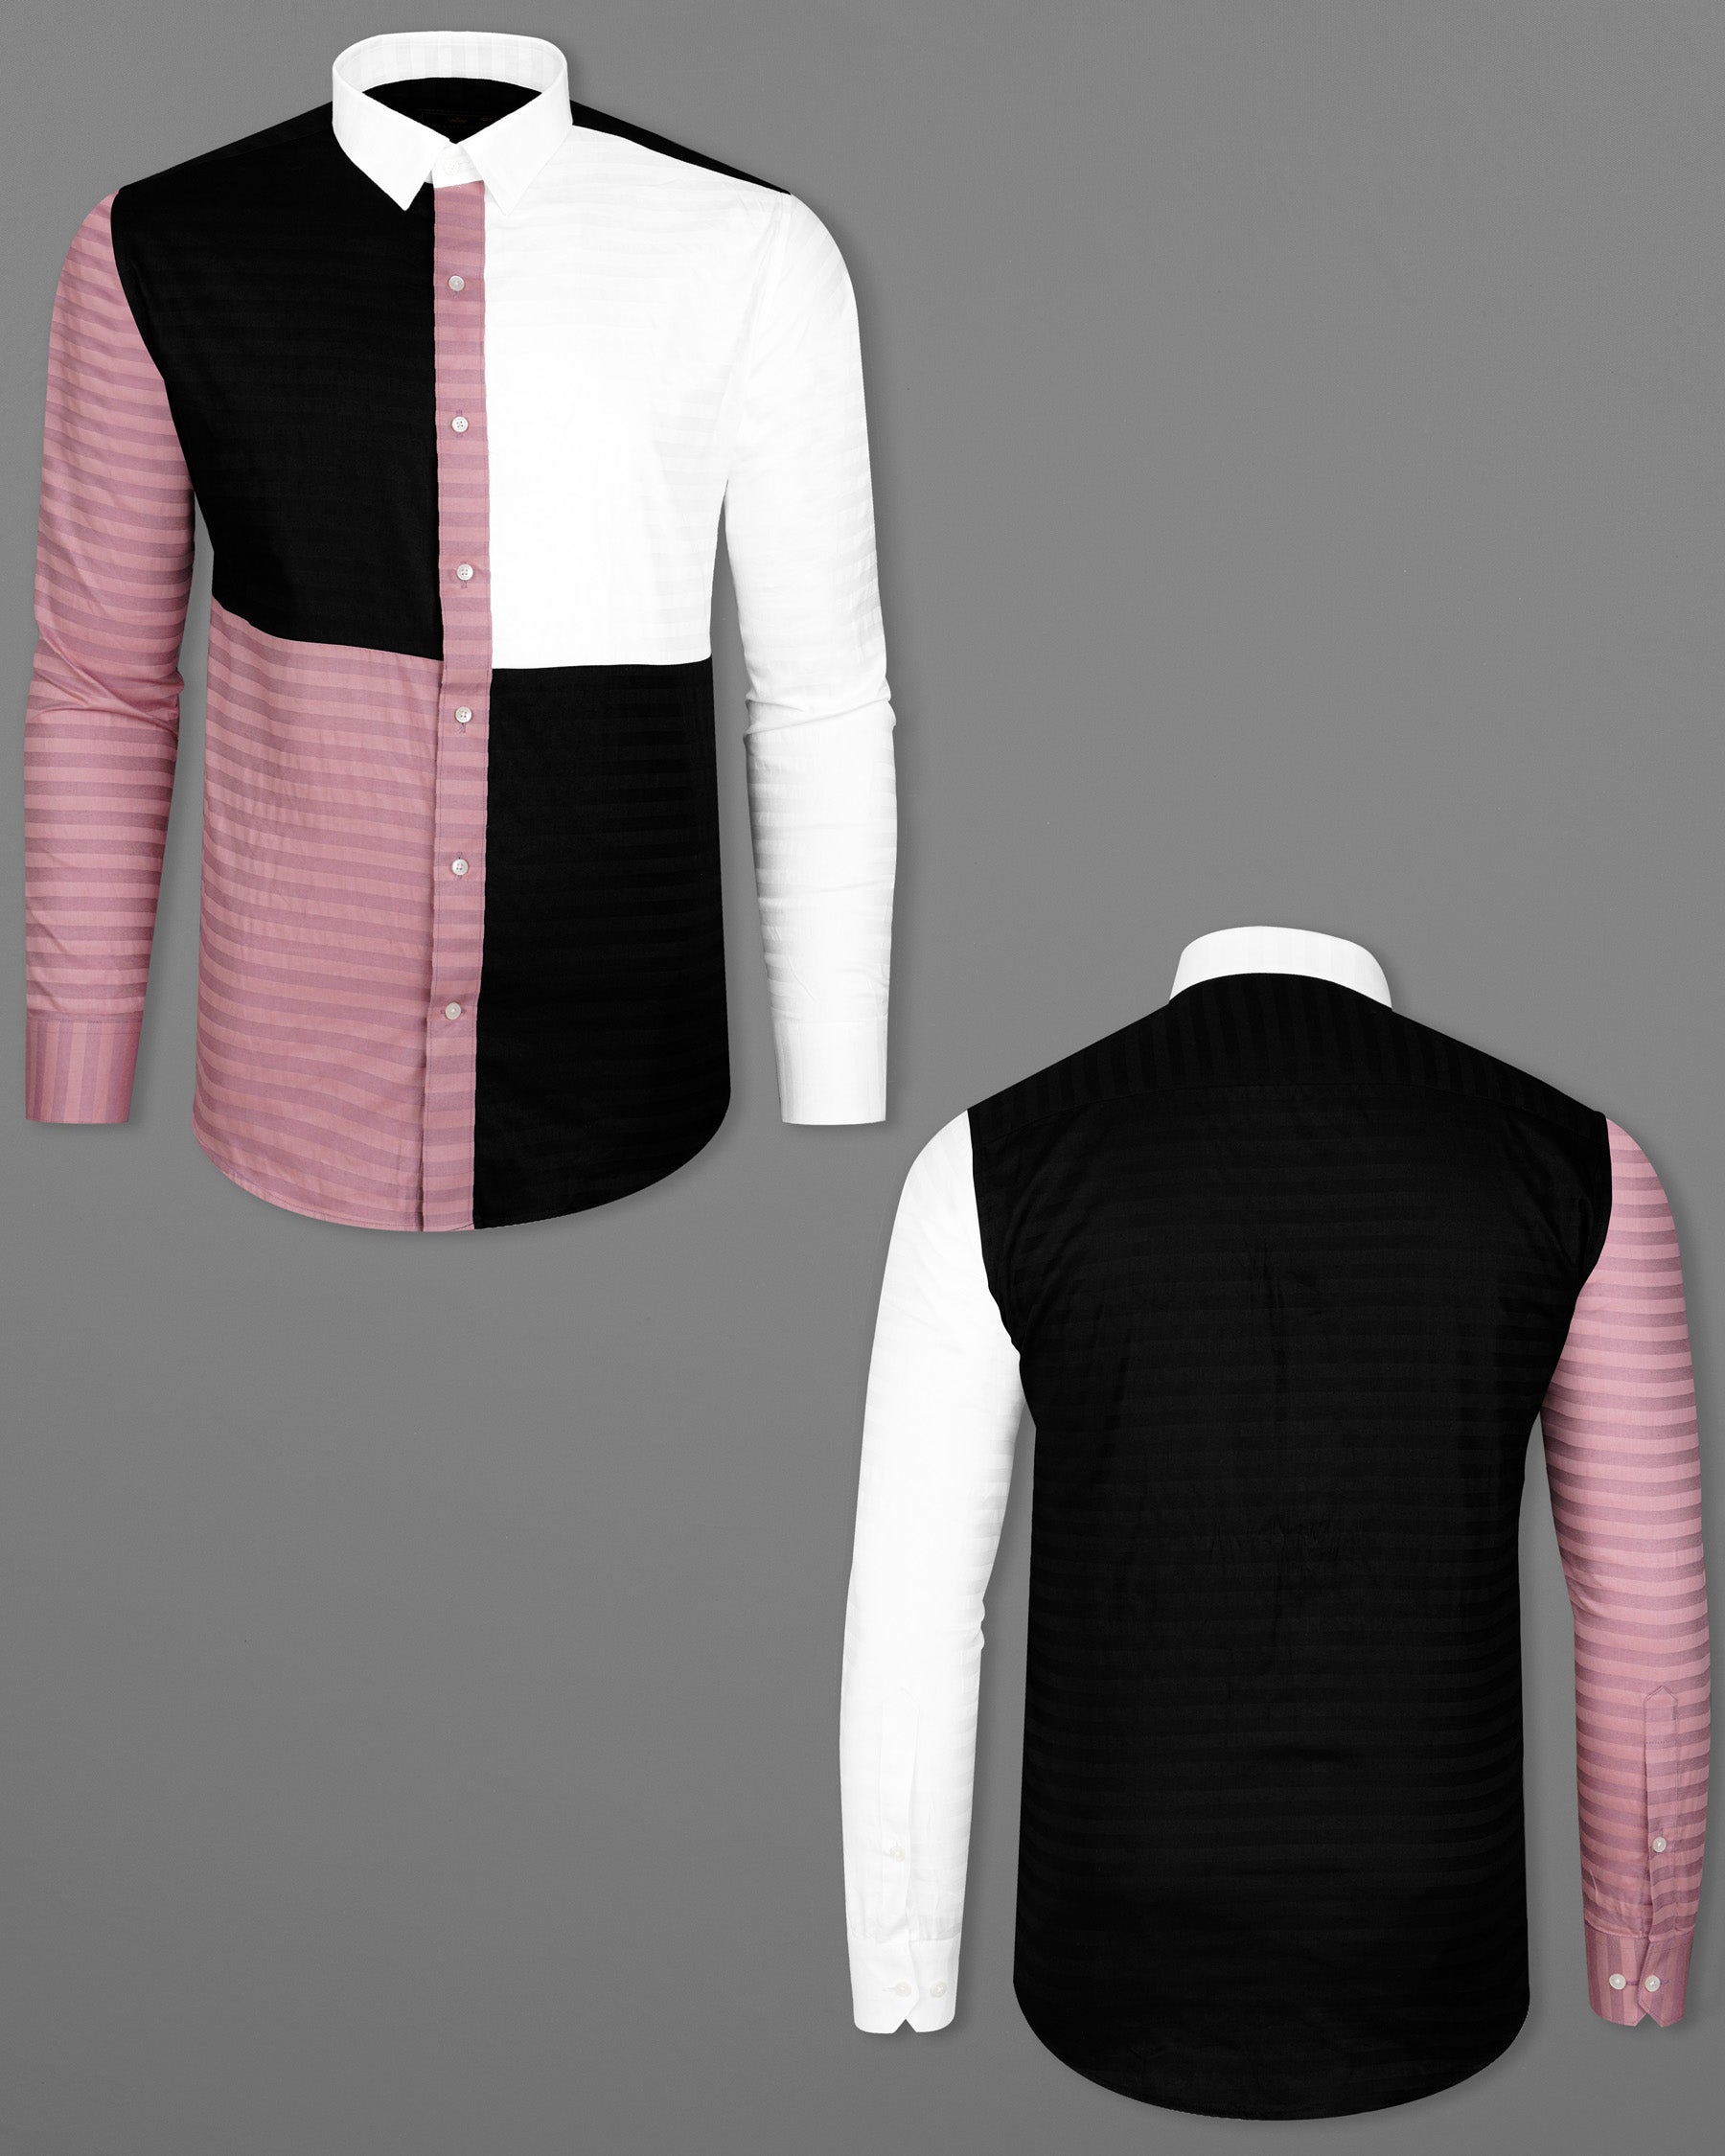 Oriental Pink Striped with Jade Black and White Super Soft Premium Cotton Designer Block Shirt         8045-P102-38, 8045-P102-39, 8045-P102-40, 8045-P102-42, 8045-P102-44, 8045-P102-46, 8045-P102-48, 8045-P102-50, 8045-P102-52